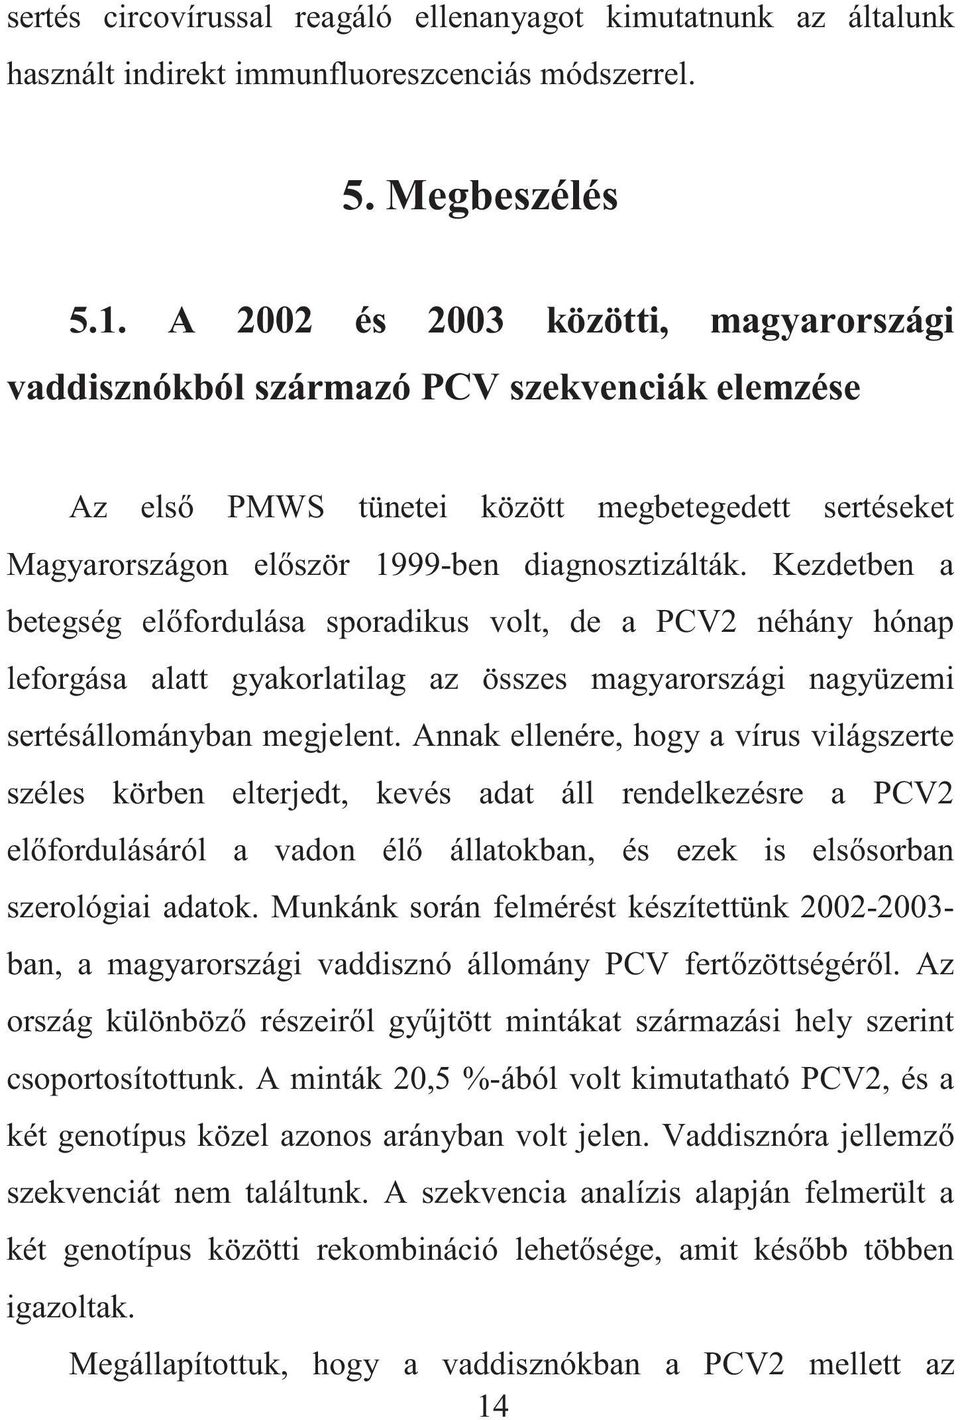 Kezdetben a betegség el fordulása sporadikus volt, de a PCV2 néhány hónap leforgása alatt gyakorlatilag az összes magyarországi nagyüzemi sertésállományban megjelent.